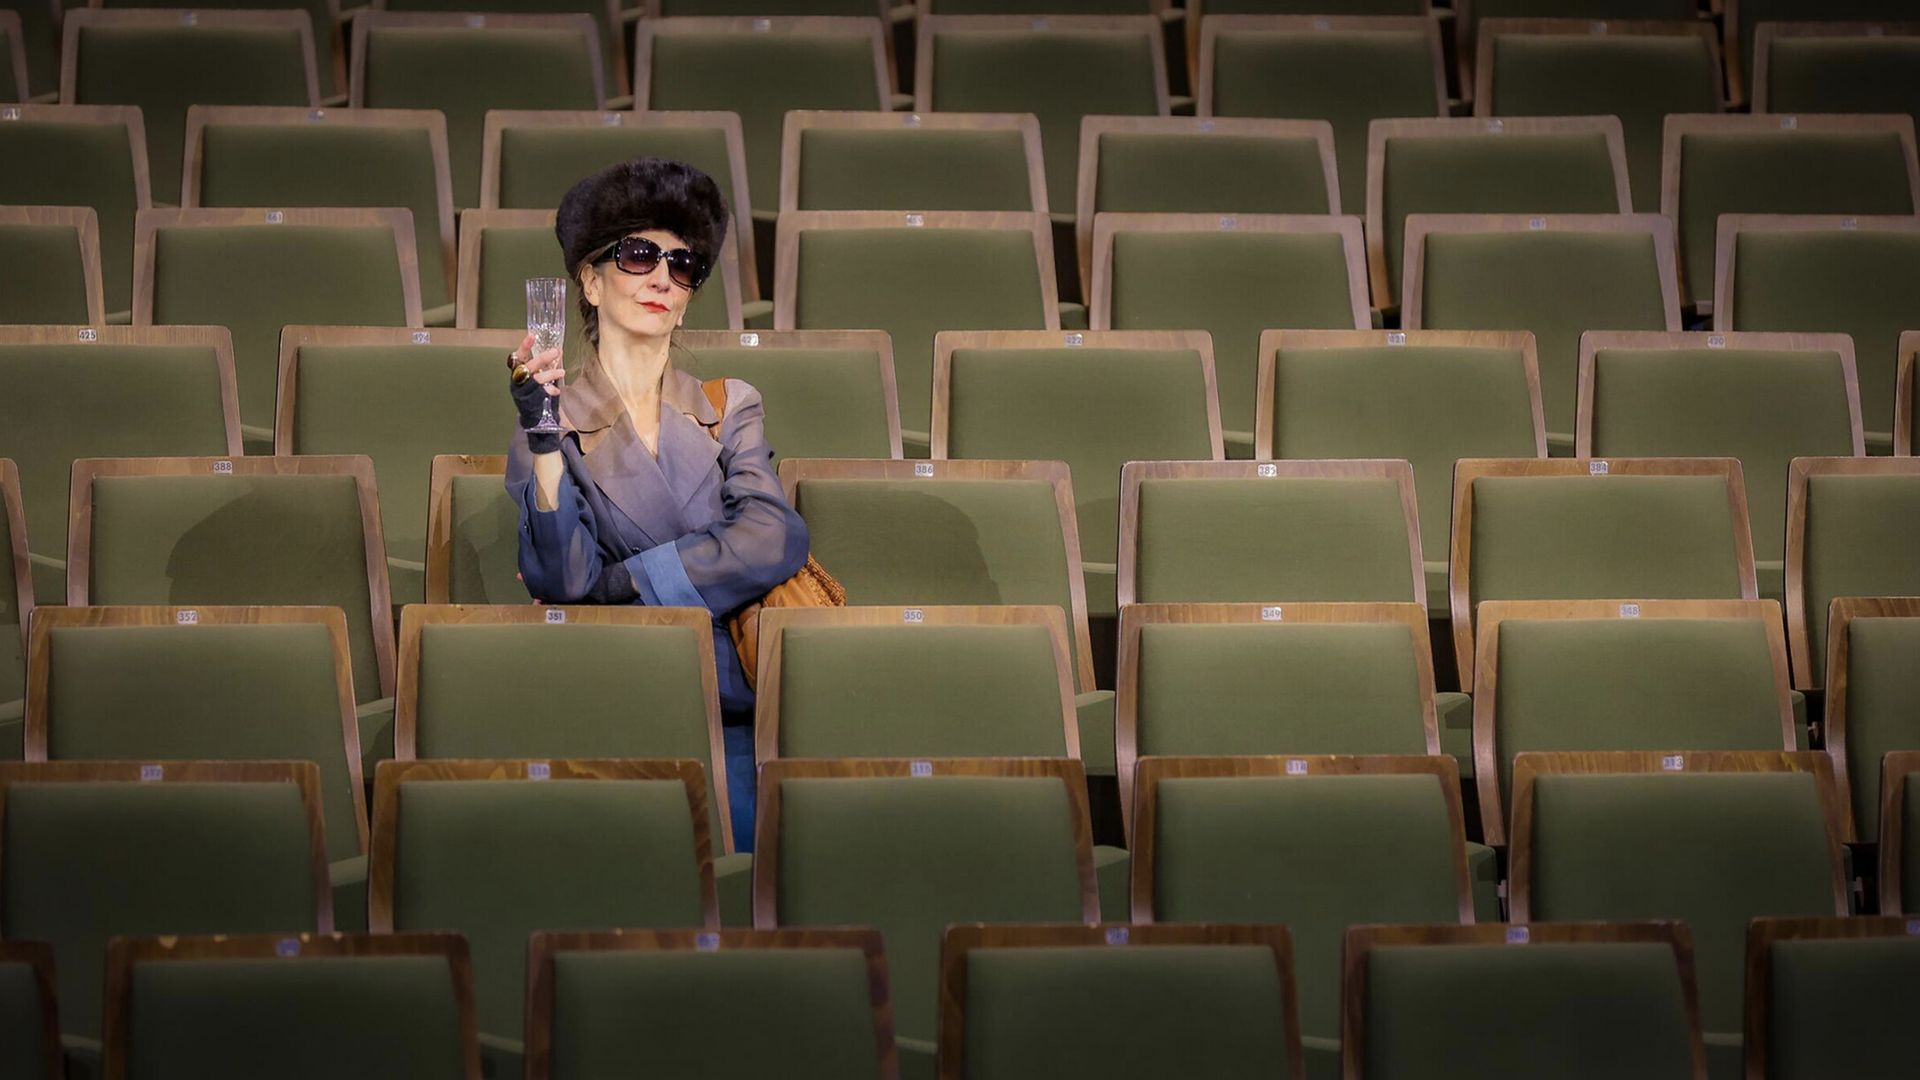 Claudia Hübbecke als Irmgard Keun sitzt mit einem Glas Sekt in der Hand im Zuschauerraum.